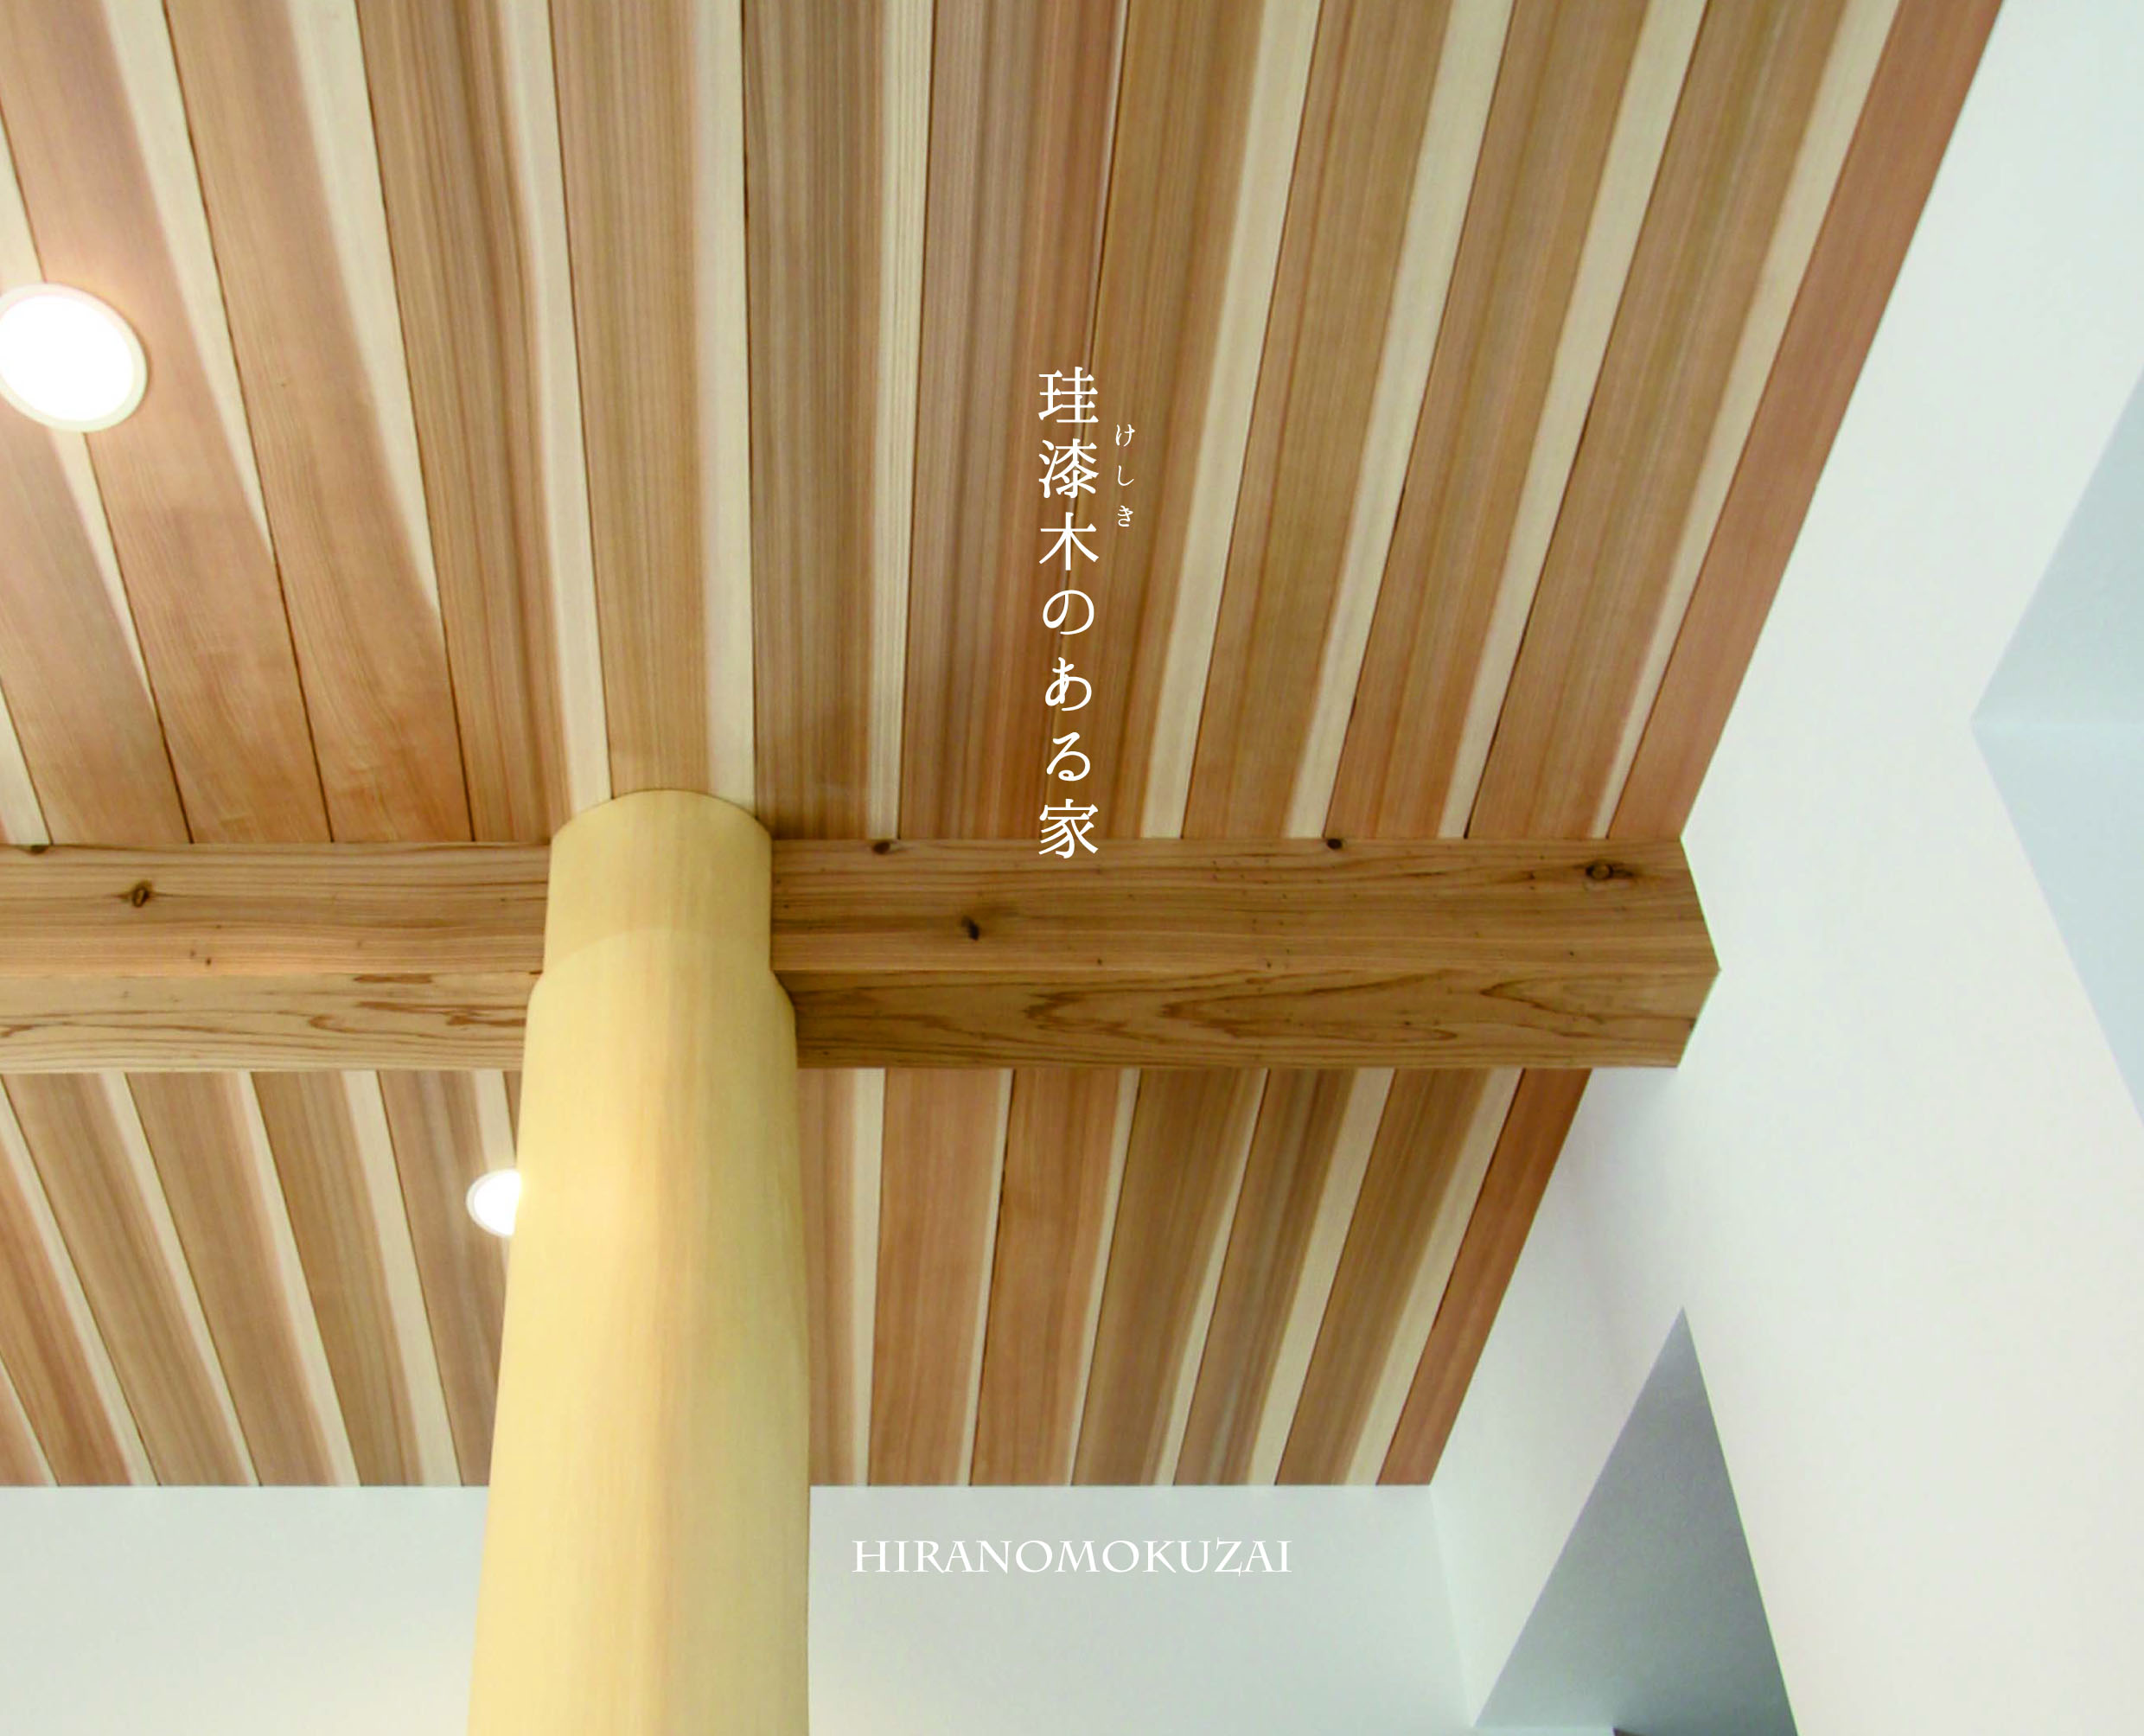 奈良の注文住宅の会社平野木材の新しいコンセプトブック[珪漆木のある暮らし]と平野木材のこと